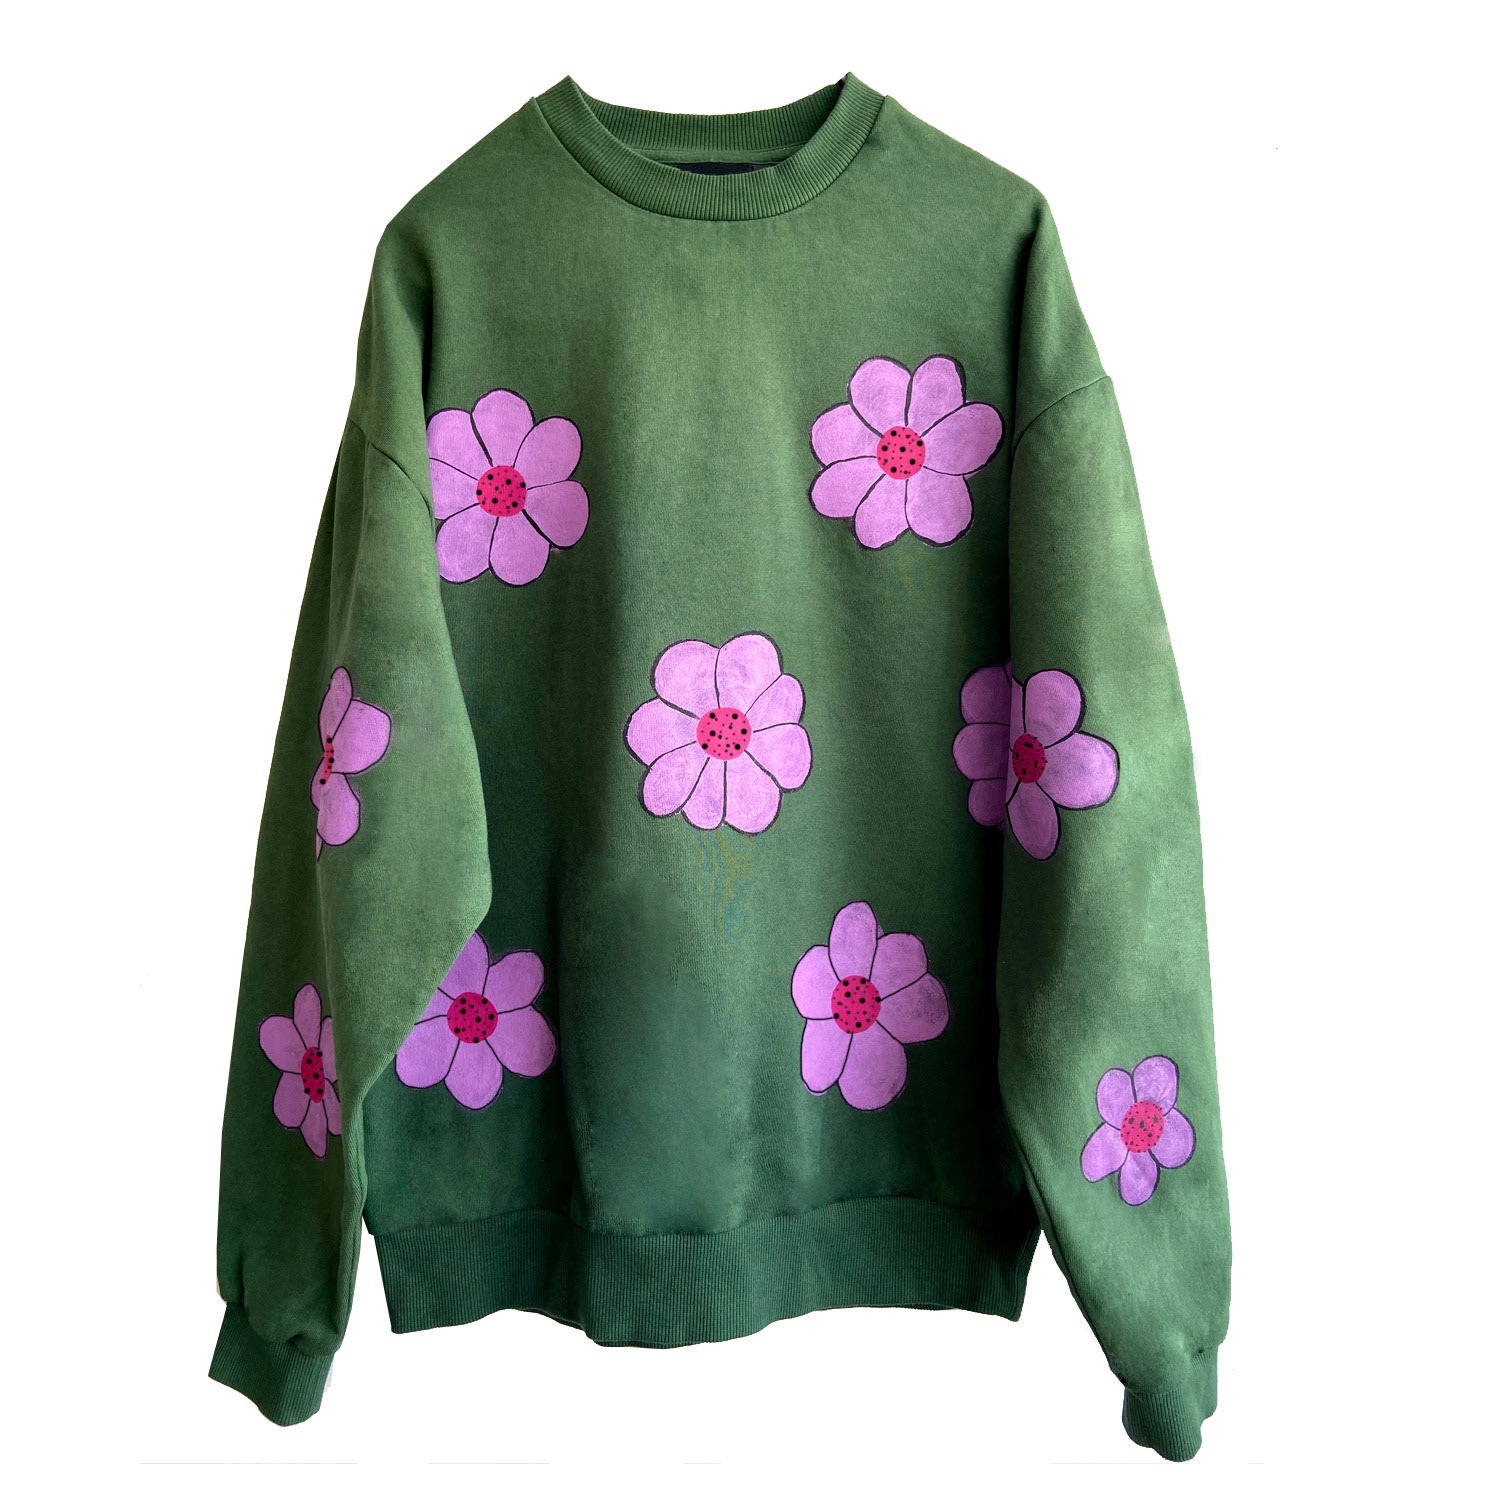 Quillattire - Green Hand Painted Floral Sweatshirt